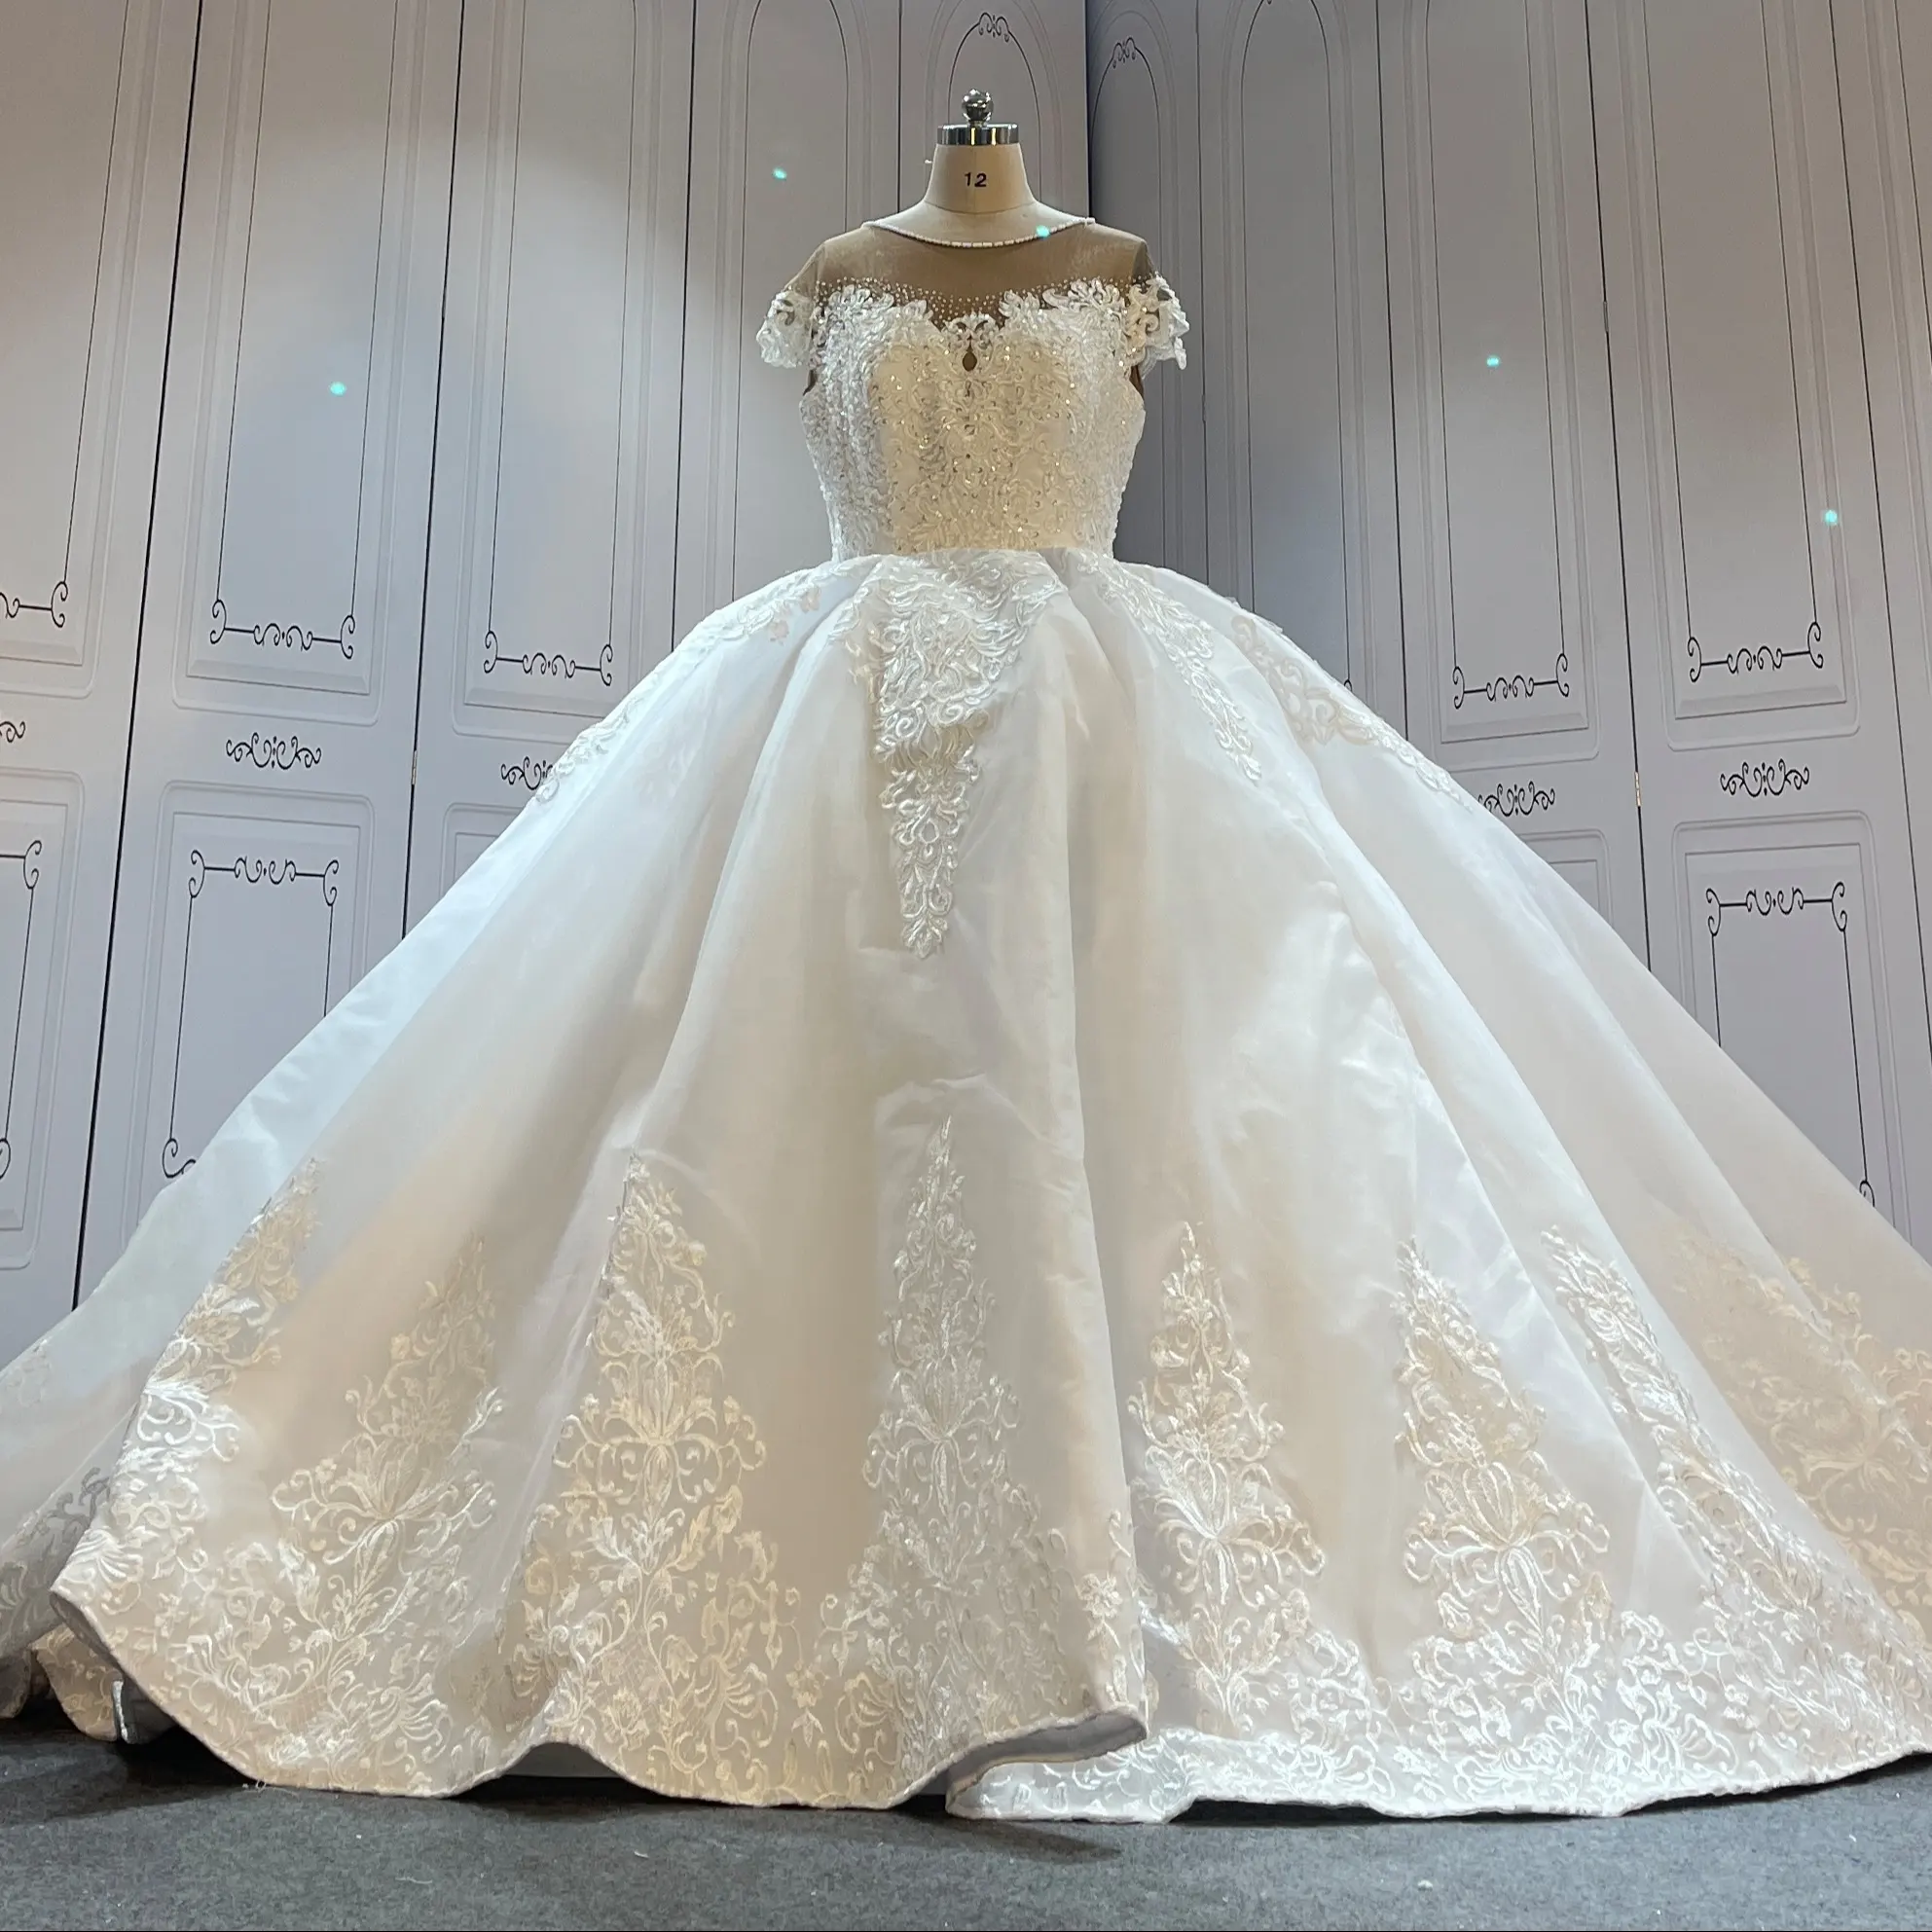 تصميم مصنوع من الصين حسب الطلب فساتين زفاف بيضاء نقية فساتين زفاف إفيريقية كصور للعميل